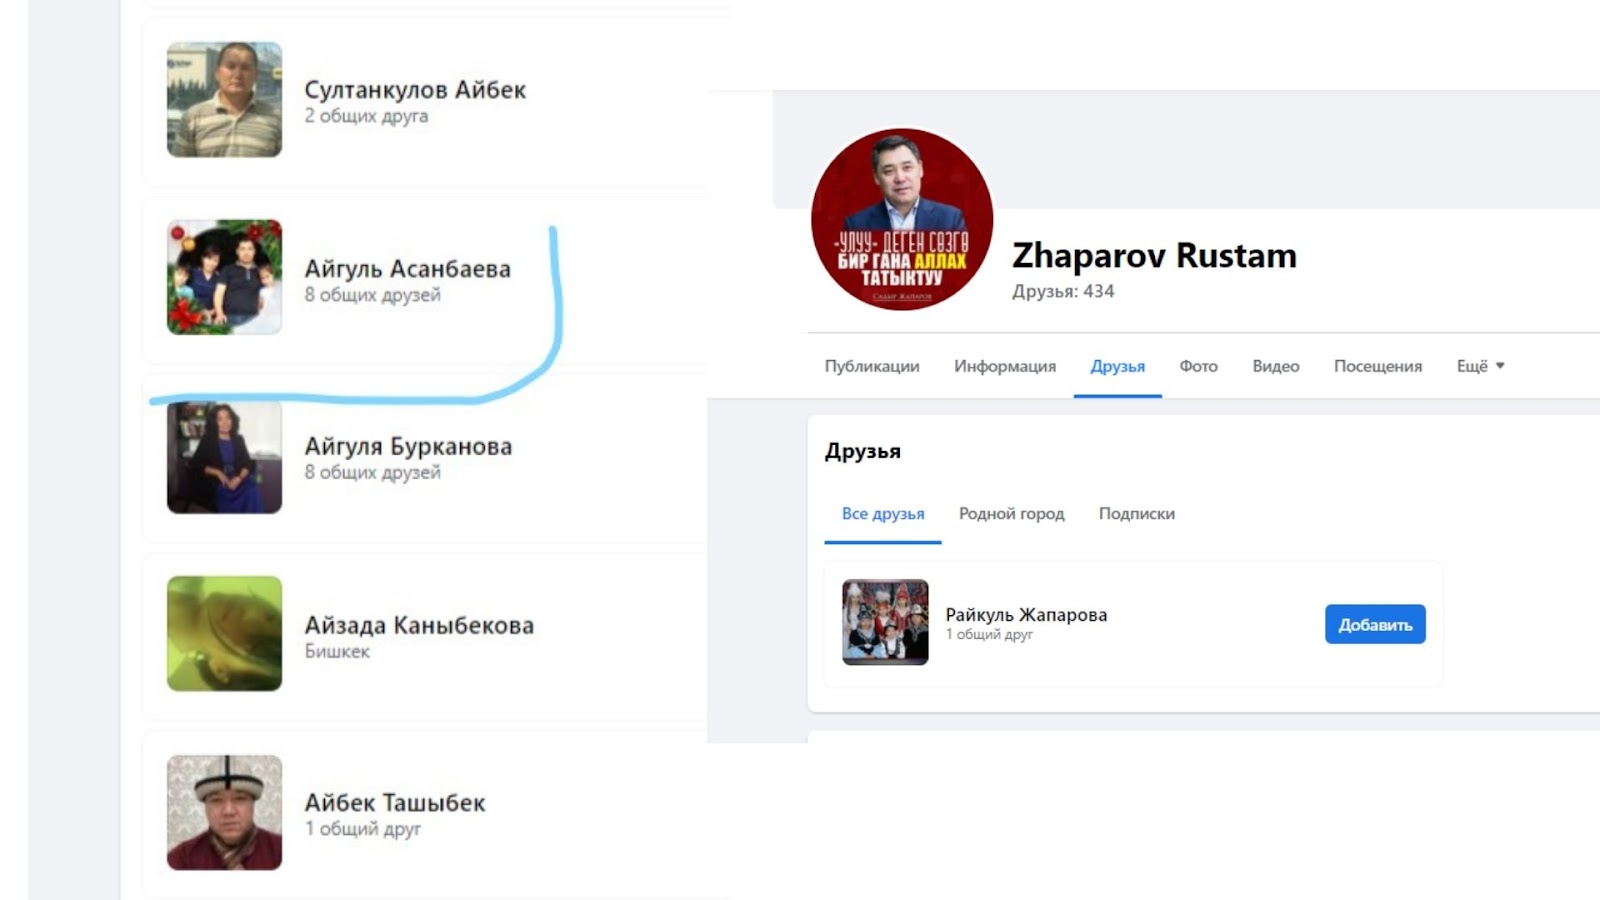 “Оппозициялык журналисттерди сындап жазган аккаунт Рустам Жапаровго таандык”. Текшеребиз